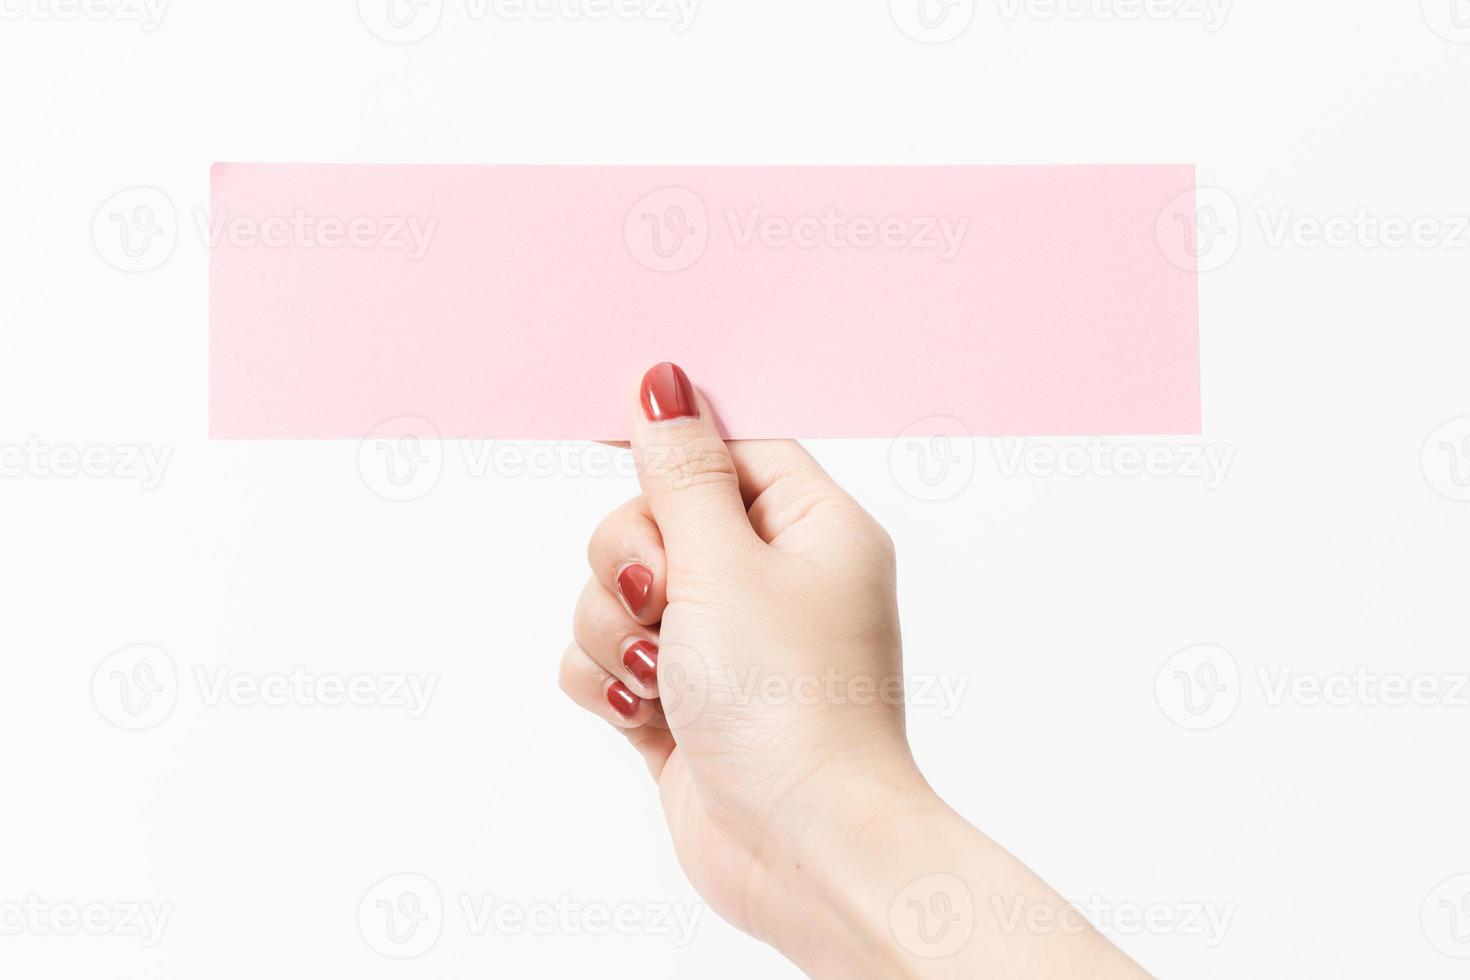 cerrar mujeres sosteniendo papel en blanco rosa sobre fondo blanco. foto